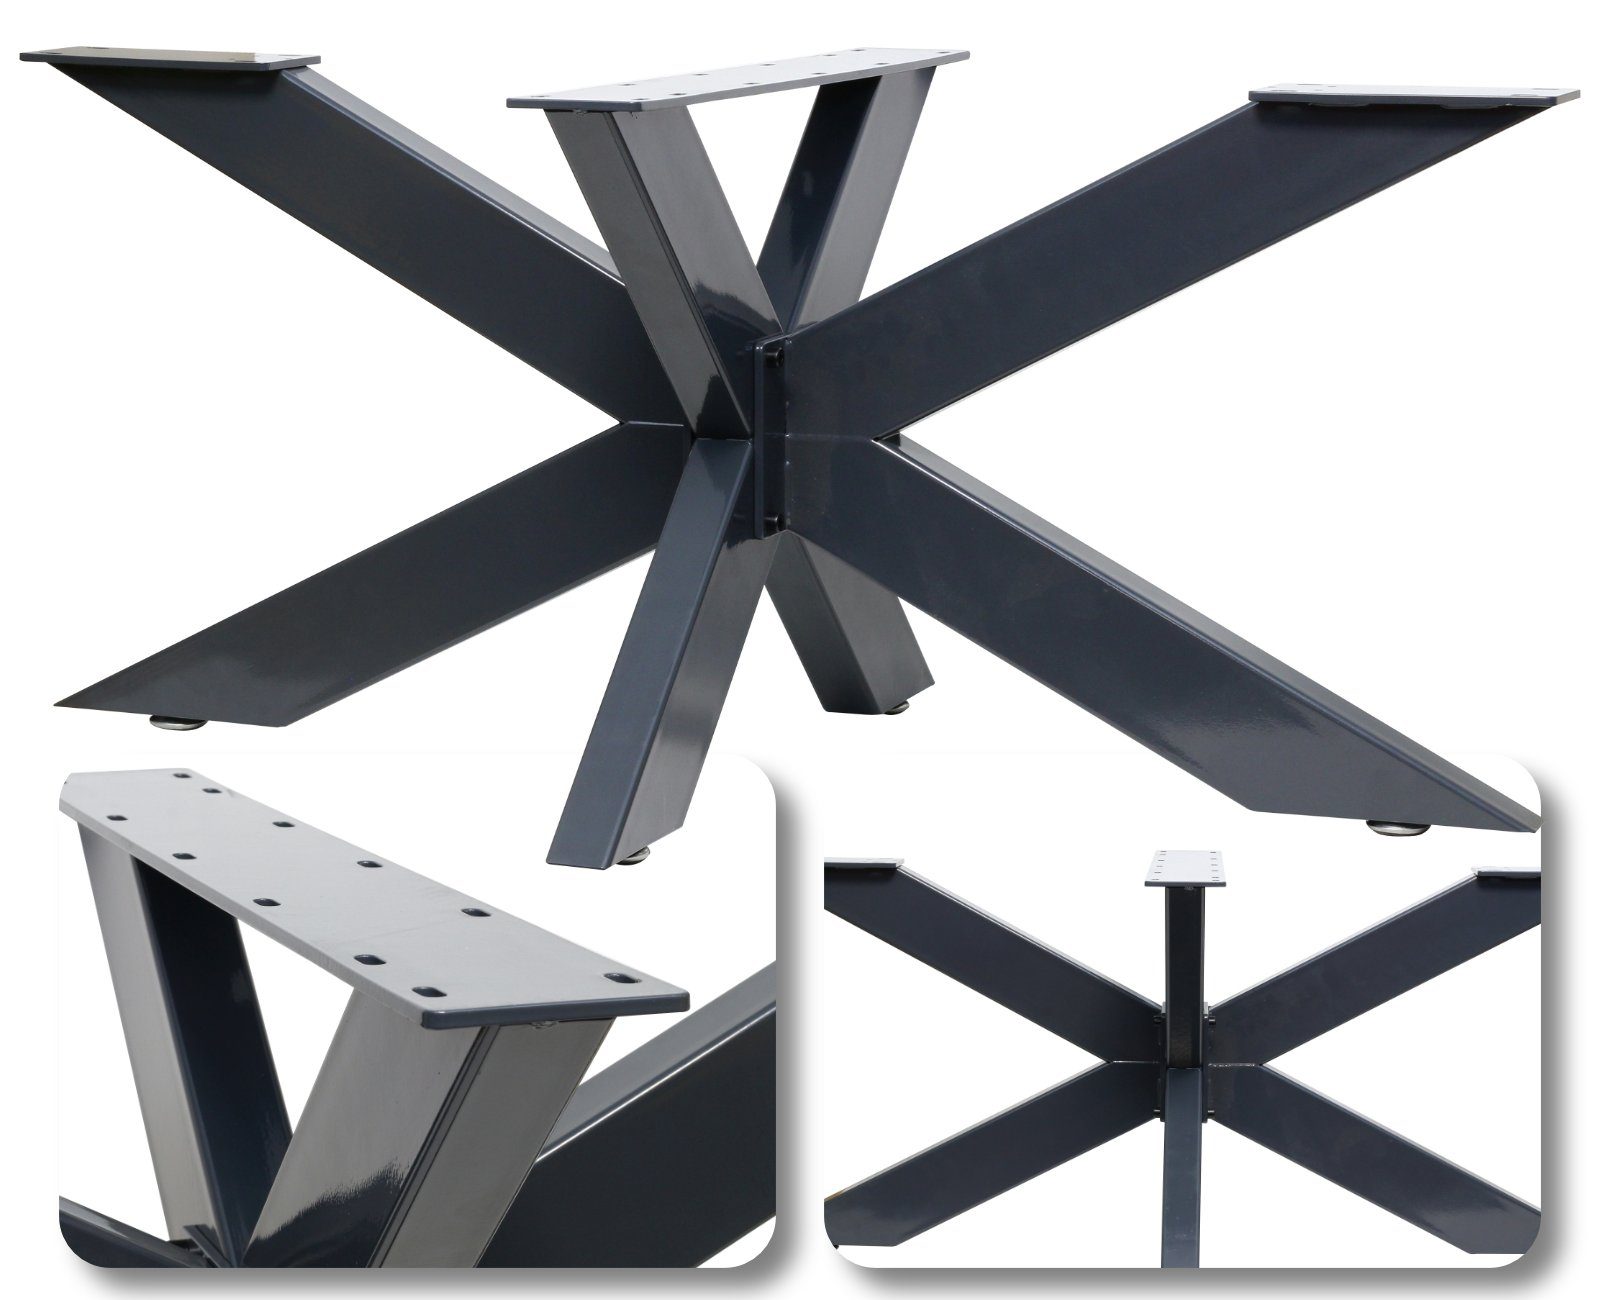 HAGO Tischbein DIY Design Industrielook Kreuzgestell Tischbein Rustikal Tischgestell